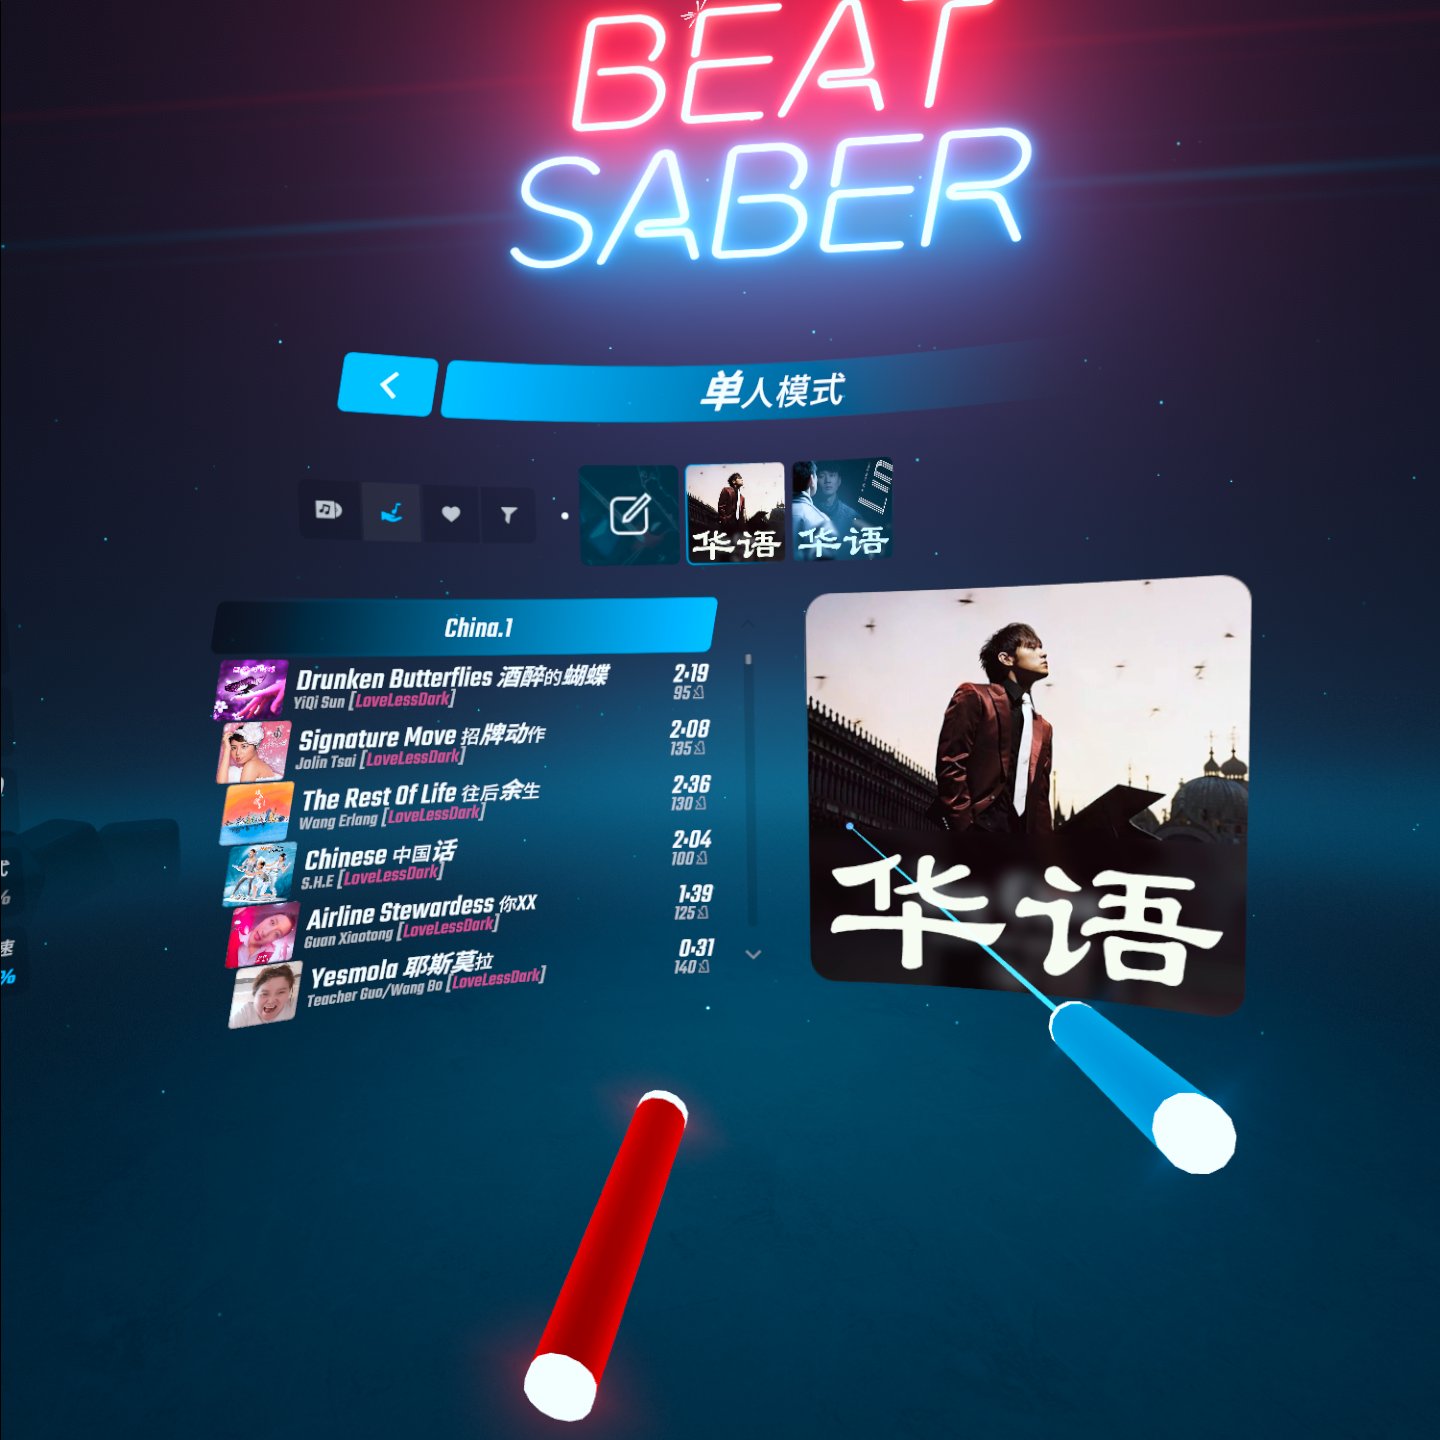 《光剑节奏BMBF整合完美一千首歌曲版本》Beat Saber 一体机中文歌曲汉化打包